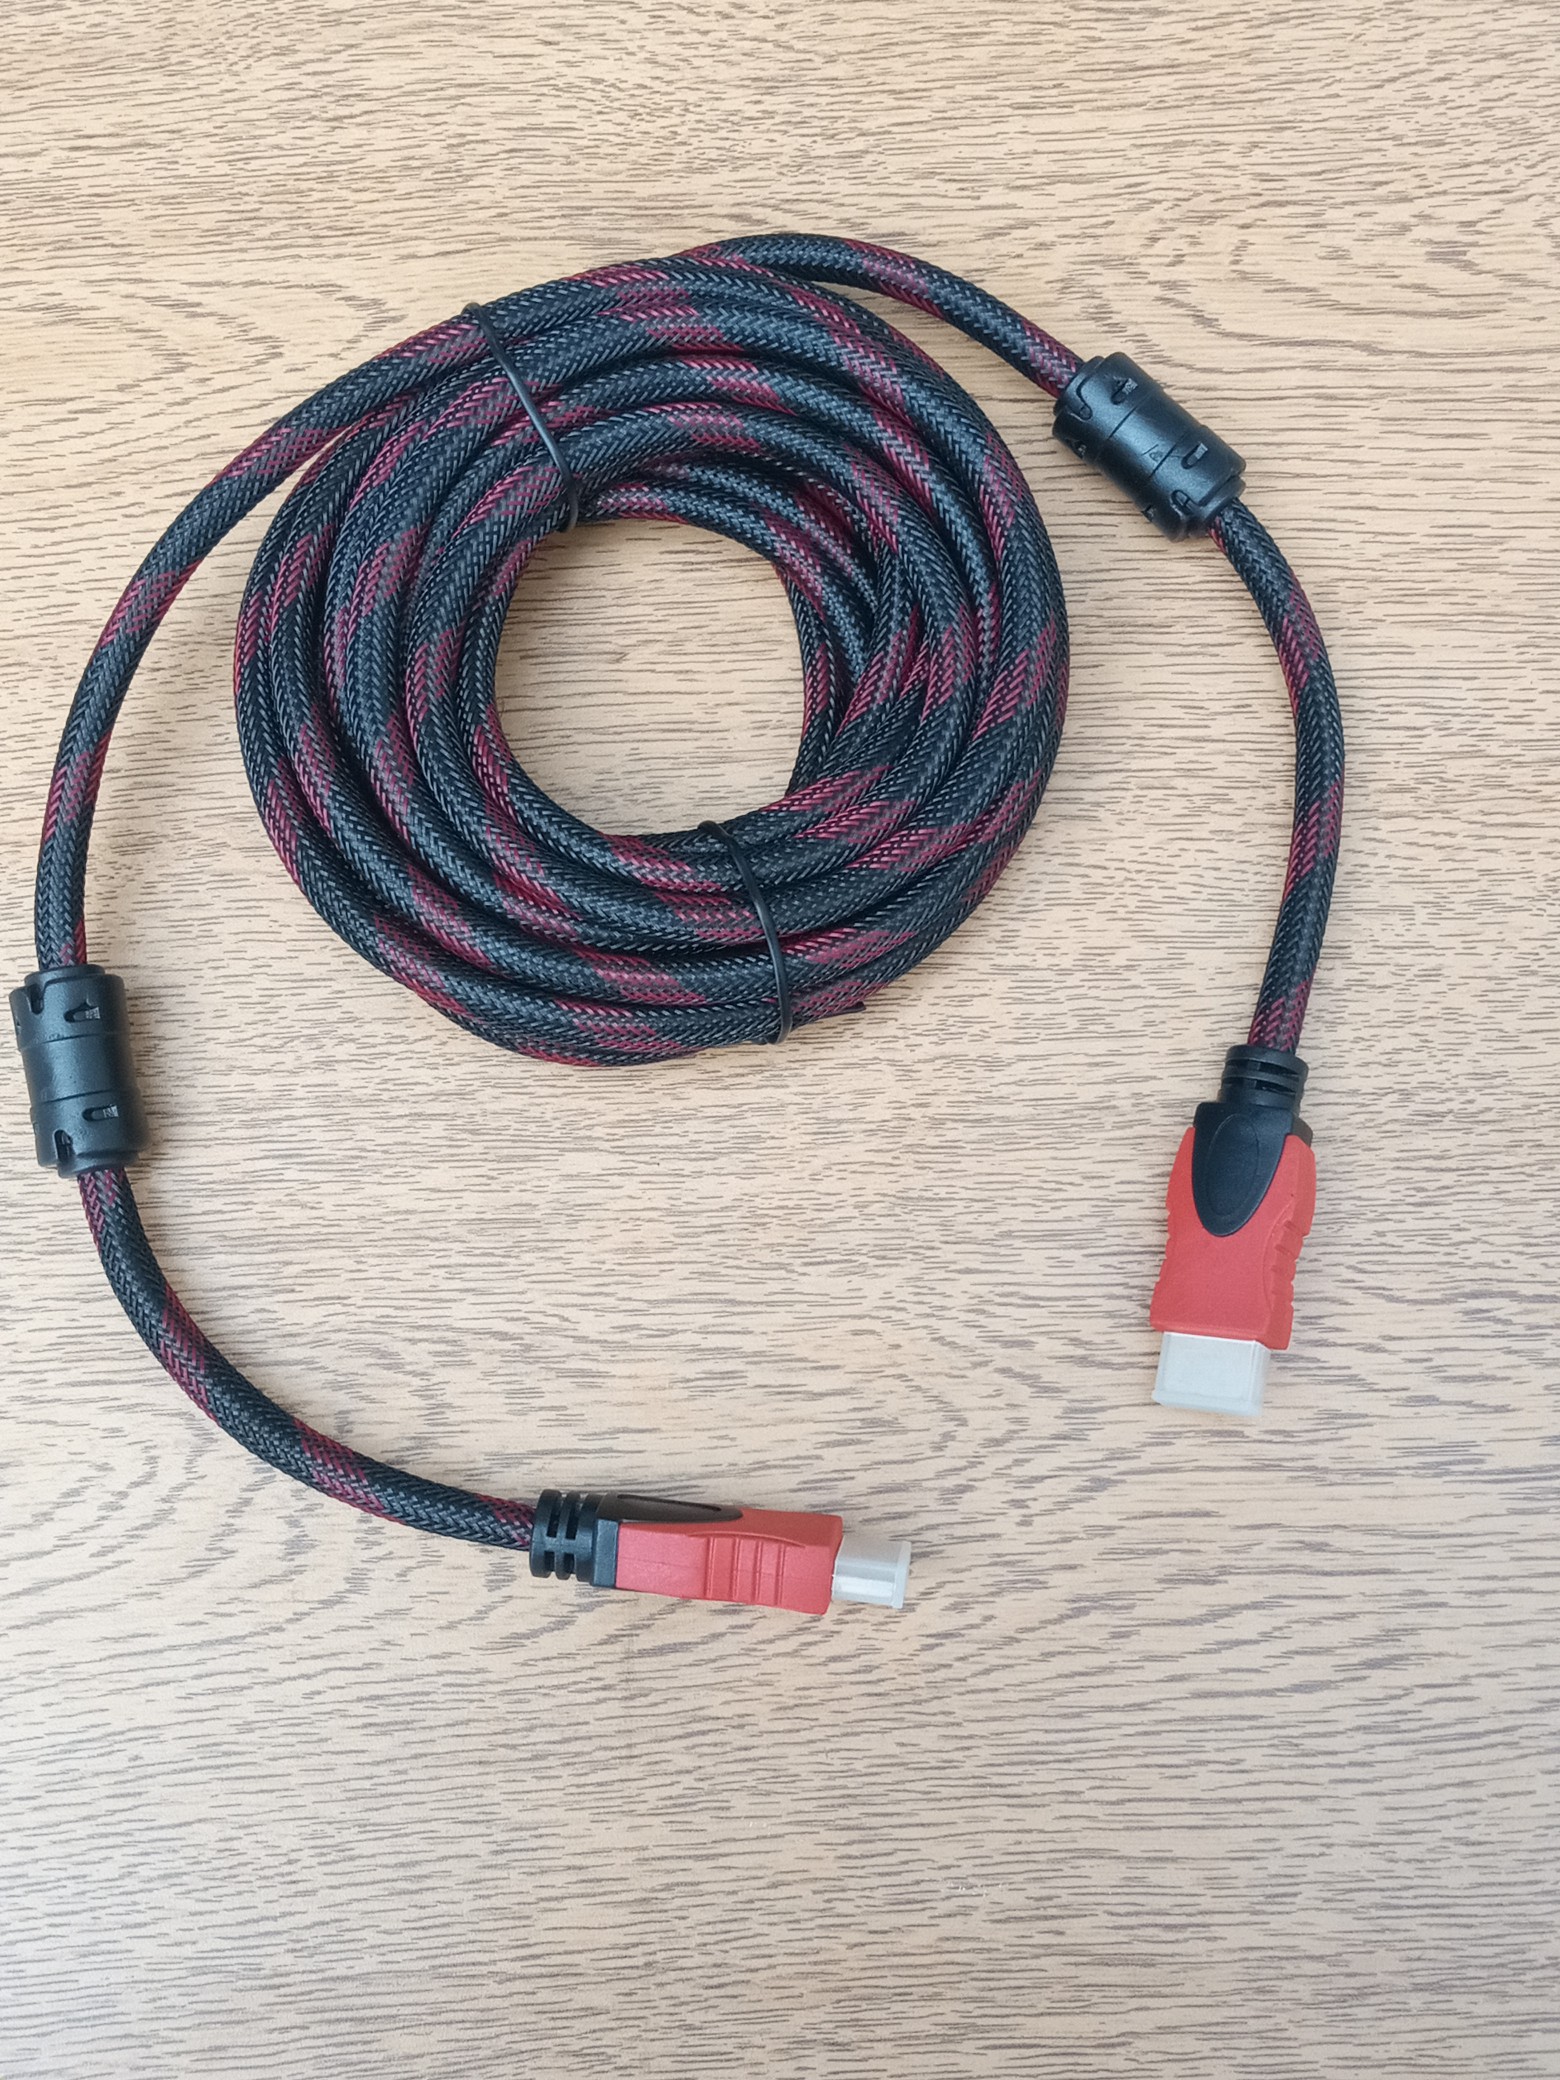 accesorios para electronica - Cable HDMI De 5 Metro